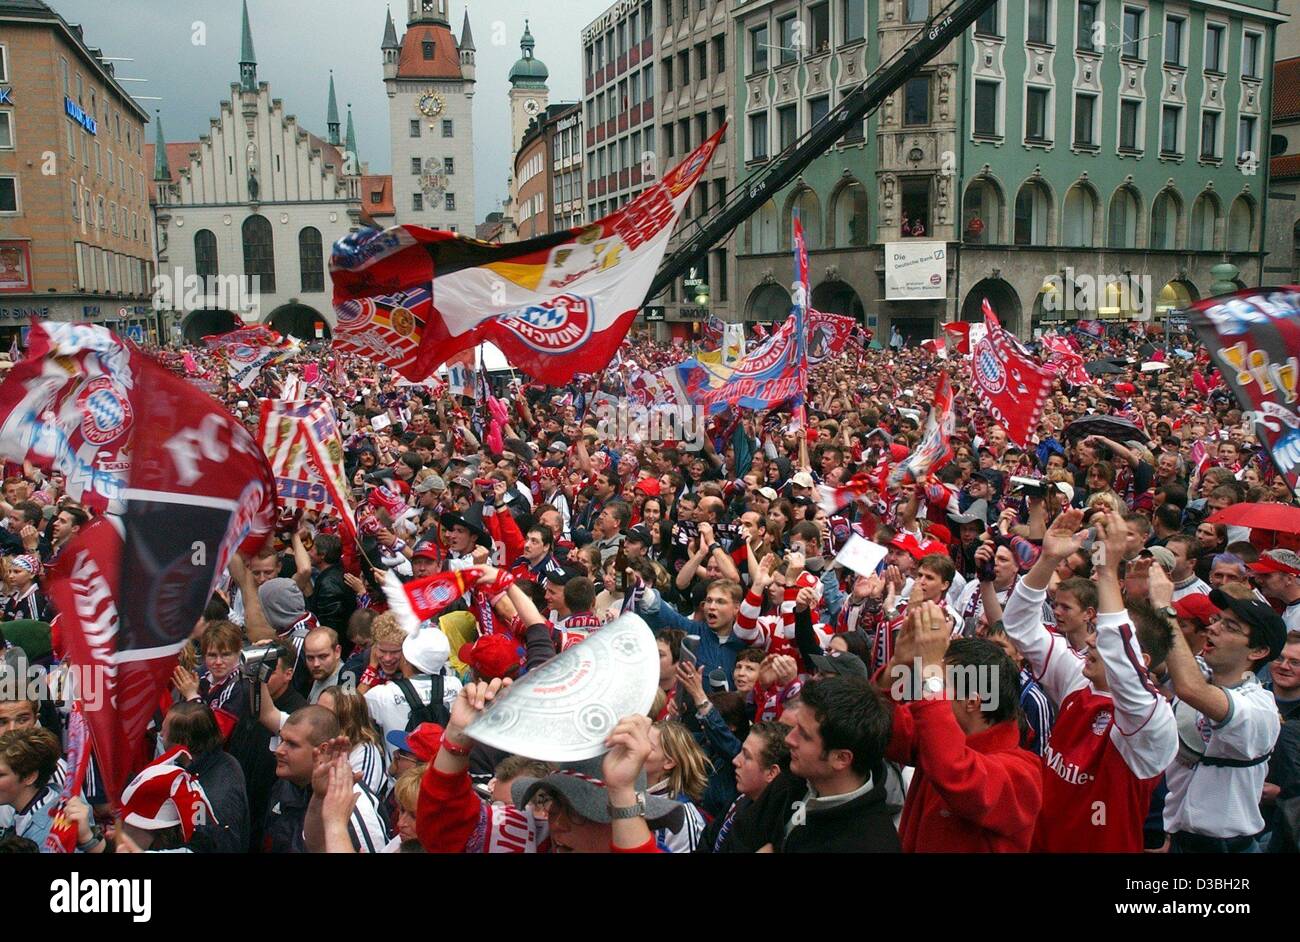 (Dpa) - jubeln die Fans der Fußball-Club Bayern München auf dem Marienplatz-Platz im Zentrum von München, 17. Mai 2003. Bayern München gewann das Spiel gegen Stuttgart und erhielt die Trophäe der Bundesliga. FC Bayern München wurden deutsche Bundesliga Champions gekrönt, bereits nach ihrem Sieg am 26. April. Es ich Stockfoto